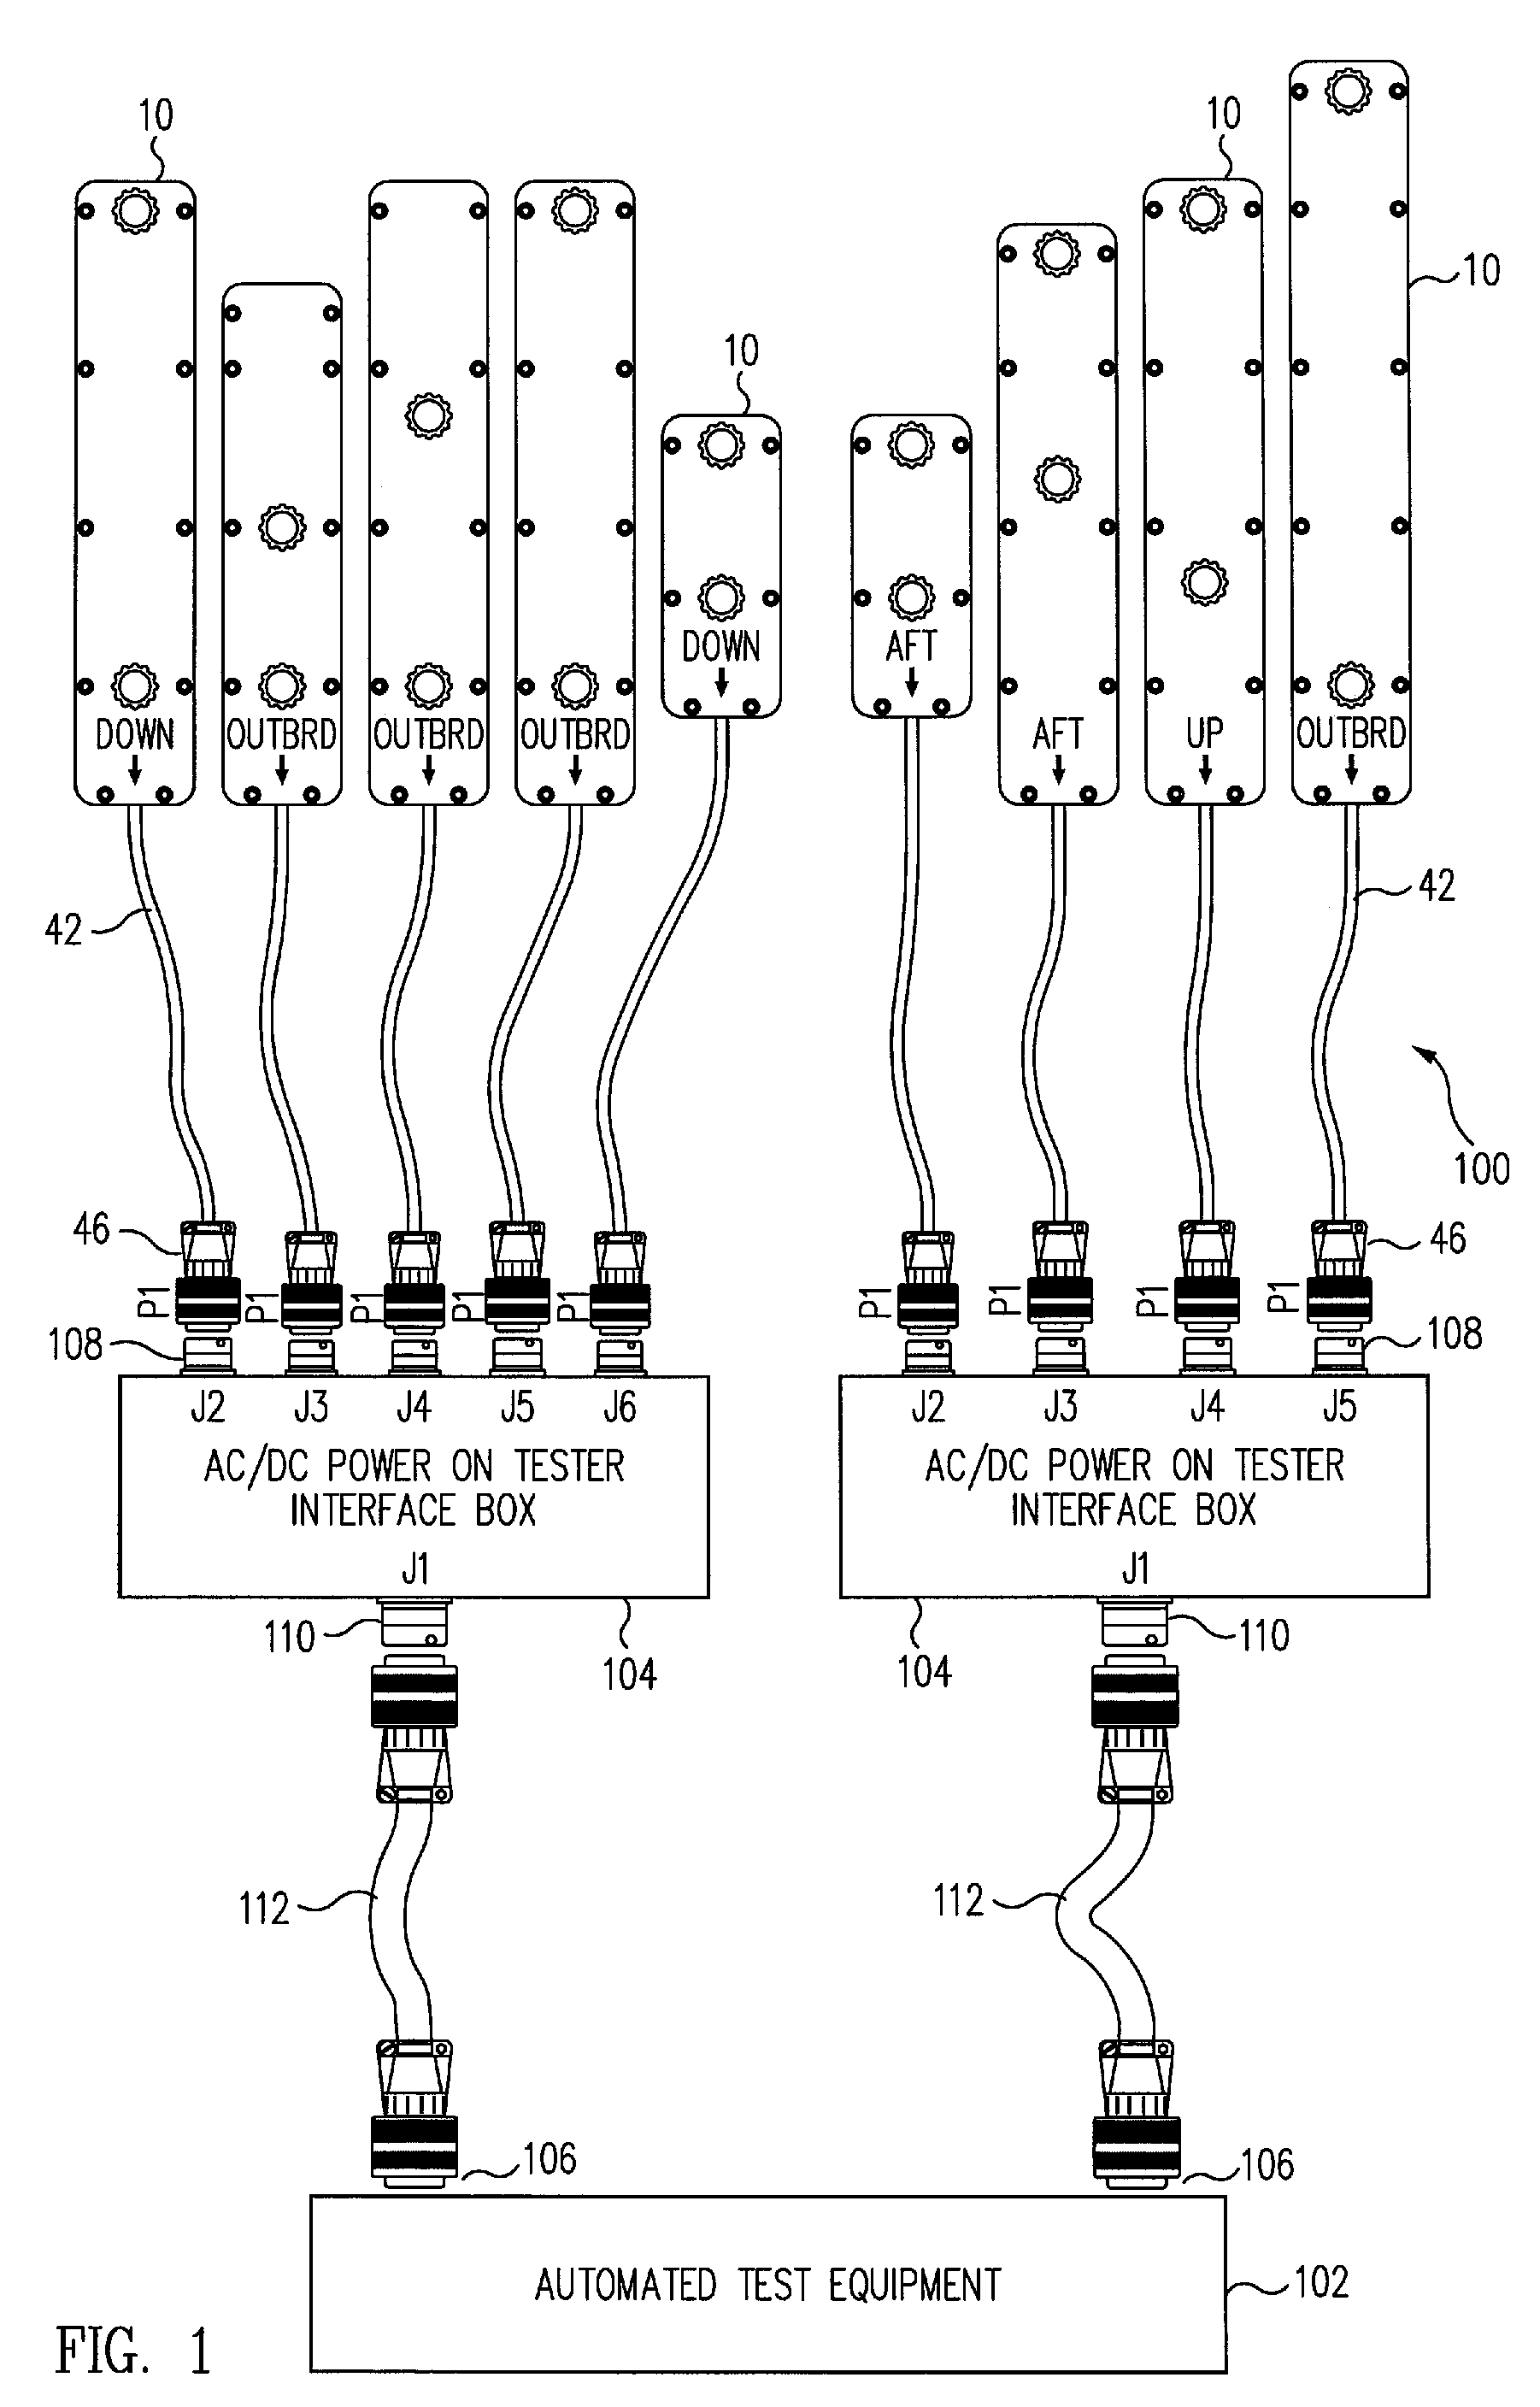 Terminal strip contacting adapter